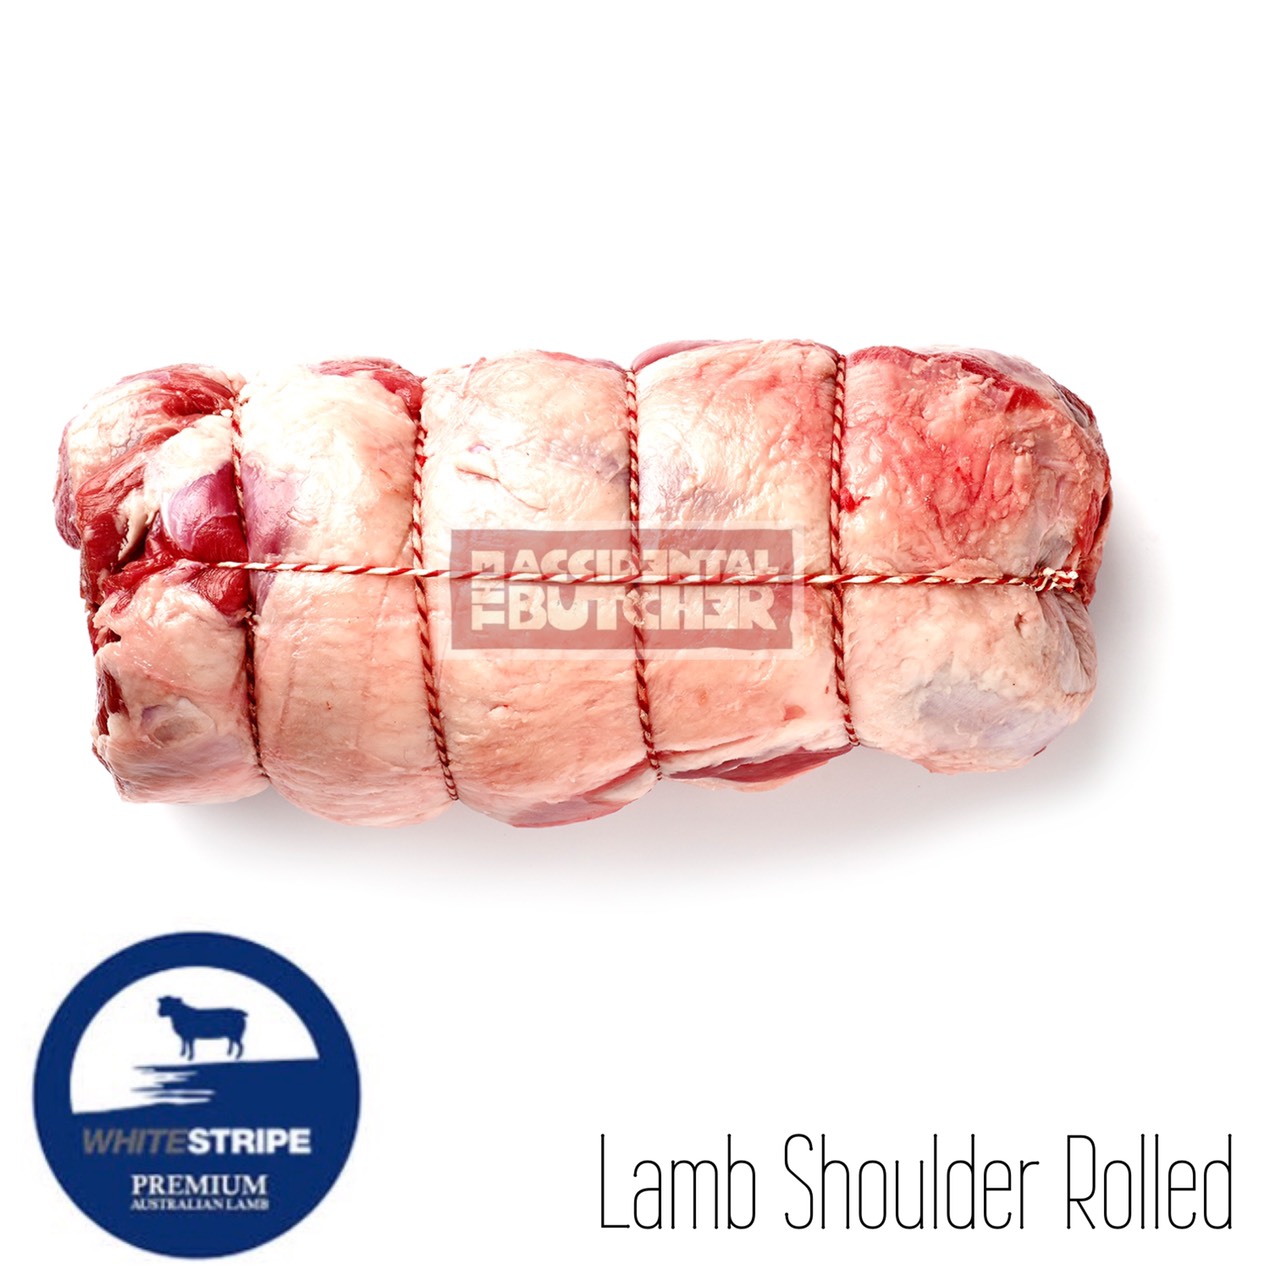 Australian Lamb Shoulder